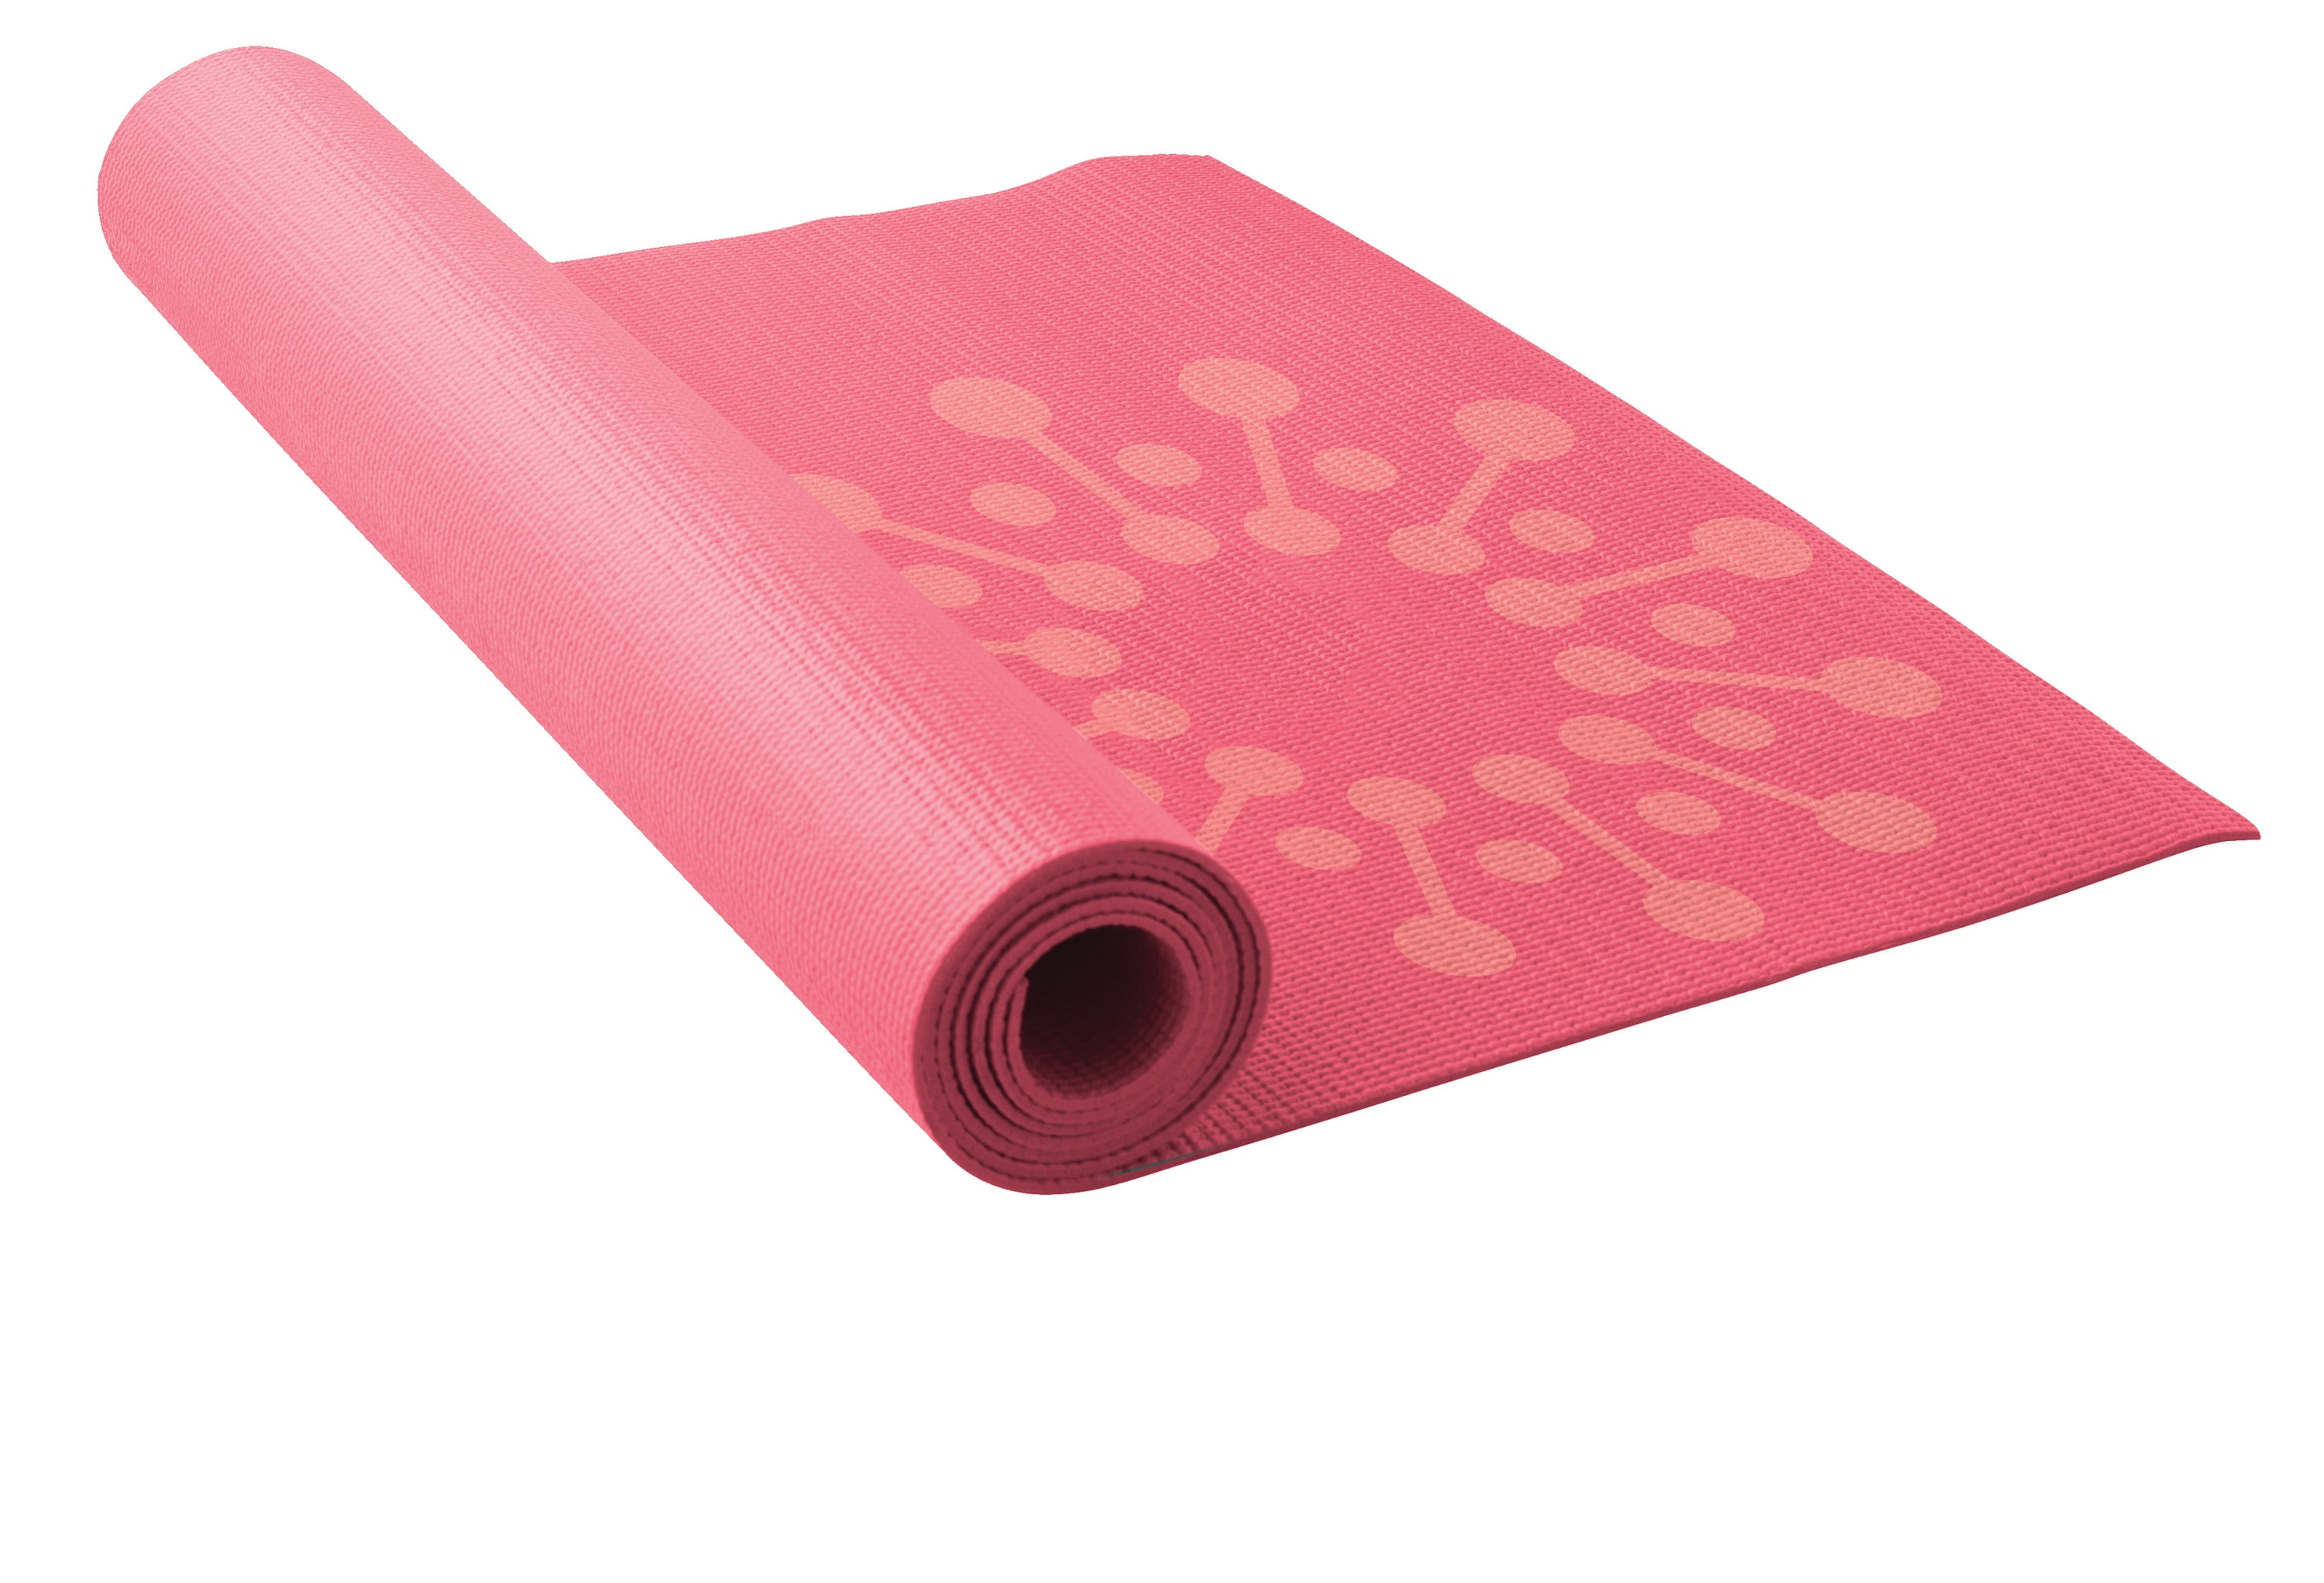 Lotus 3mm PVC Yoga Mat with Non-Slip Surface, Purple Mandala Print 